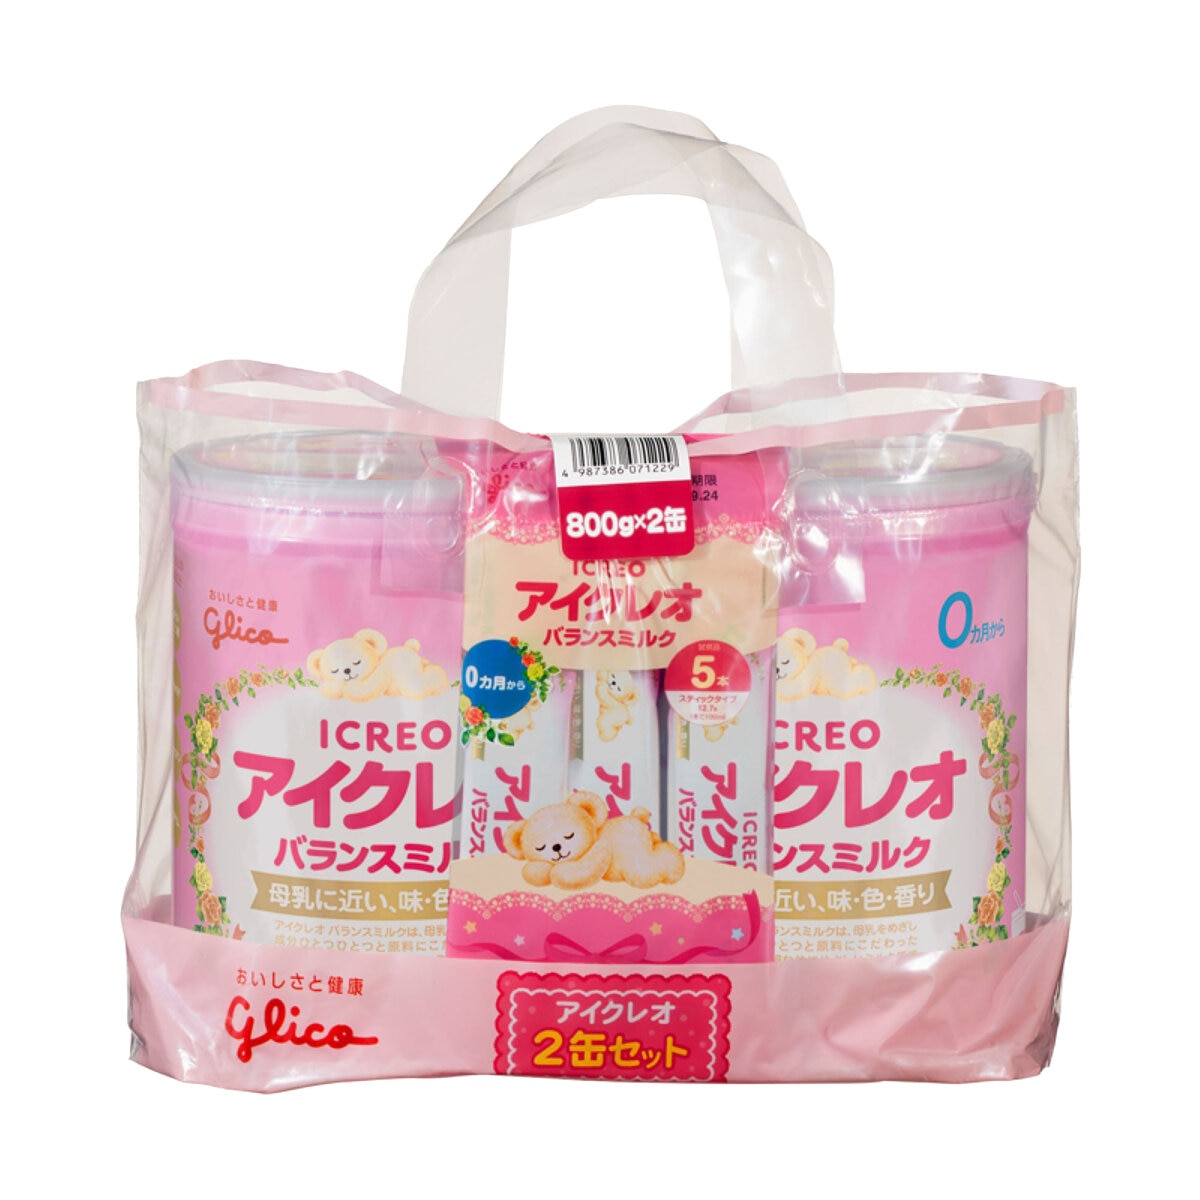 グリコアイクレオ バランスミルク 800gx2缶 スティック5本 Costco Japan